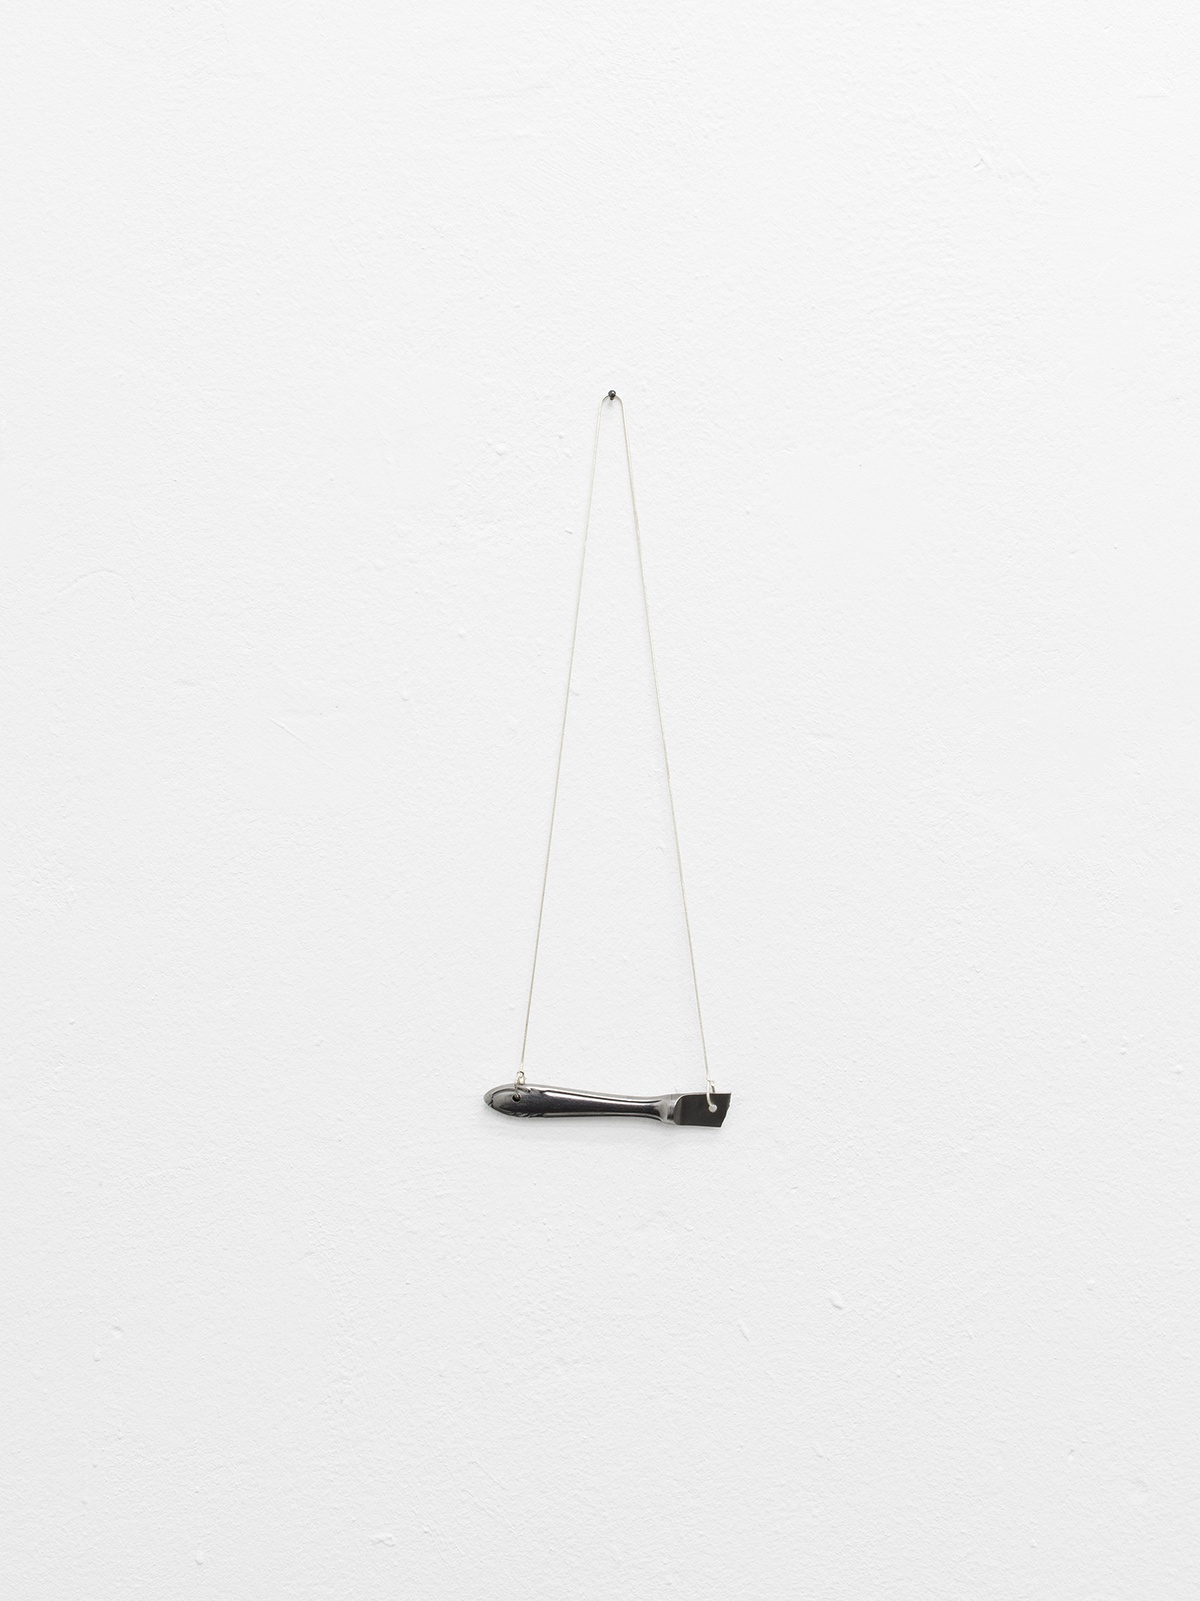 Josefin Fischer Kostüm, 2022necklace, knife30 x 20 cm